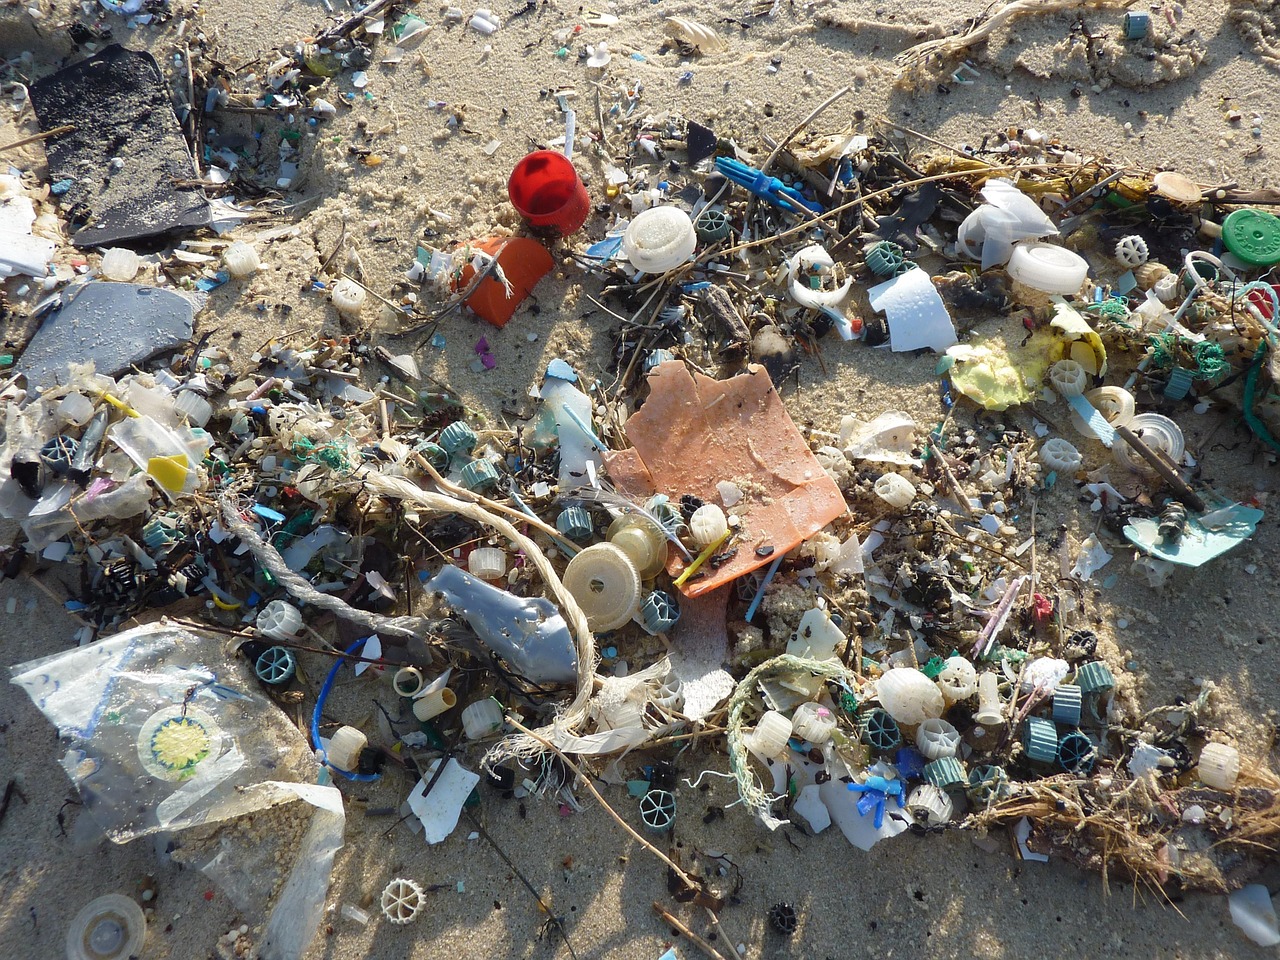 Plastica nel Mediterraneo, costa toscana la più colpita